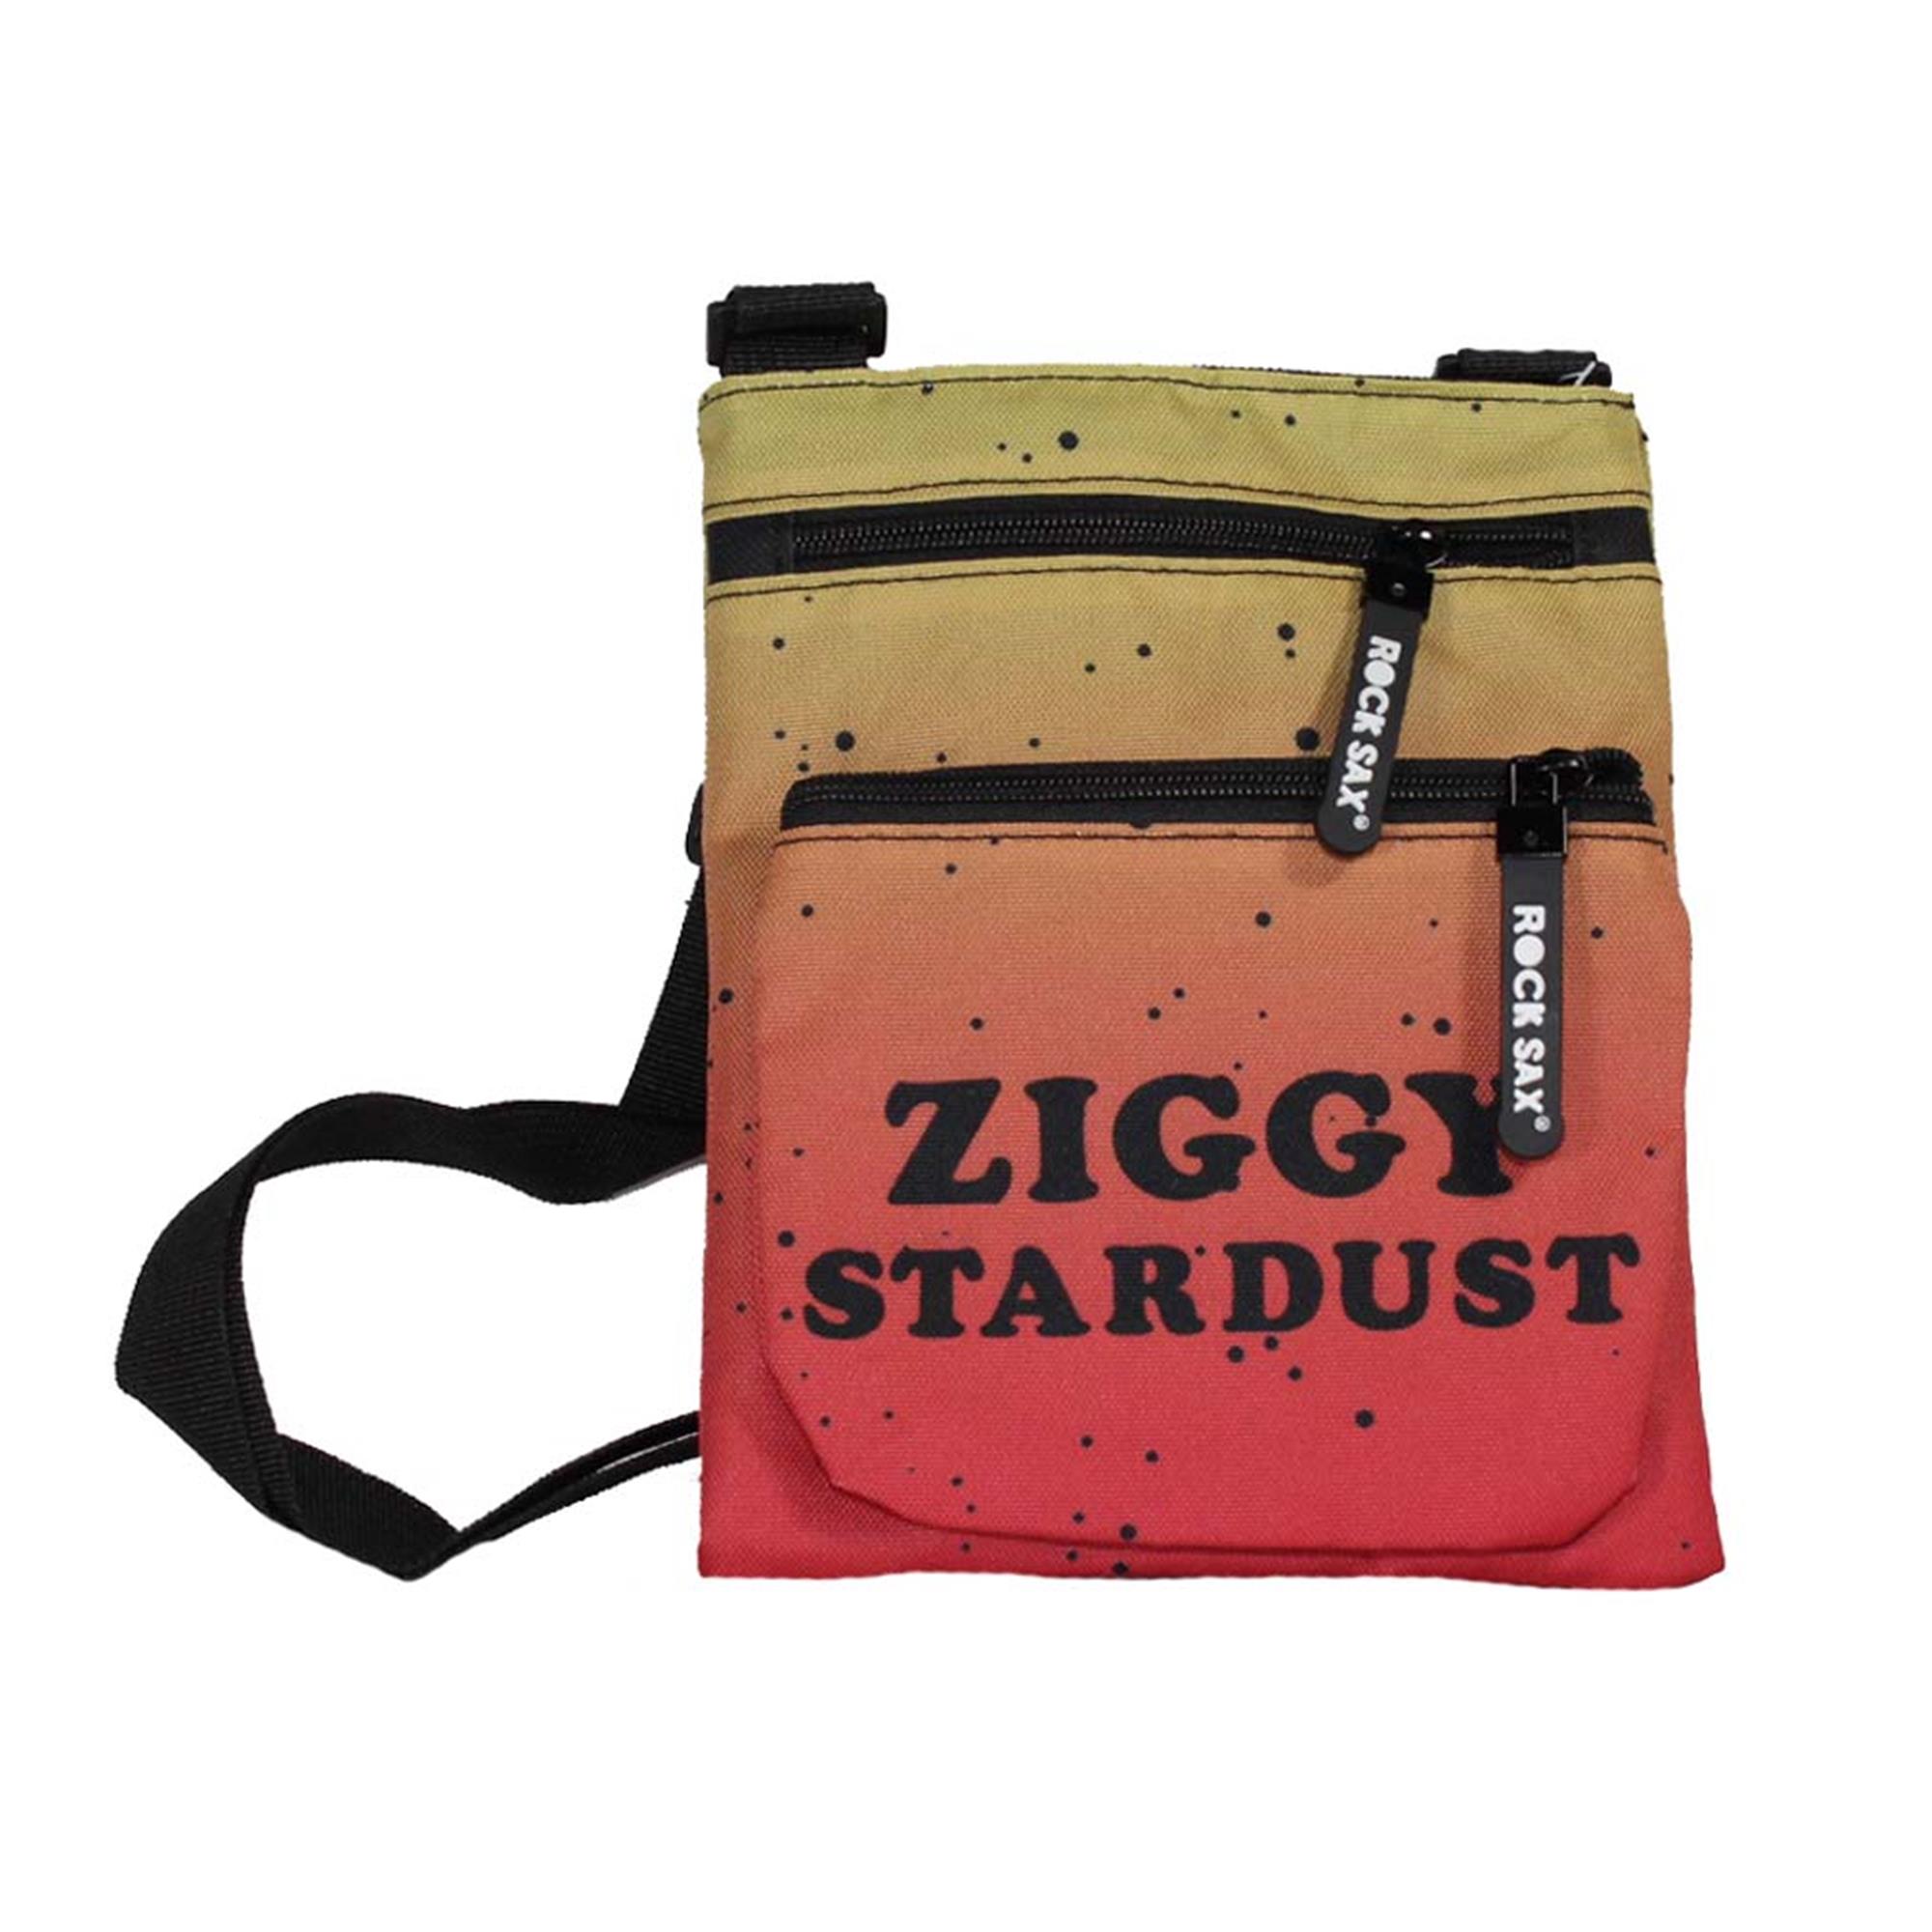 David Bowie Ziggy Stardust Body Bag